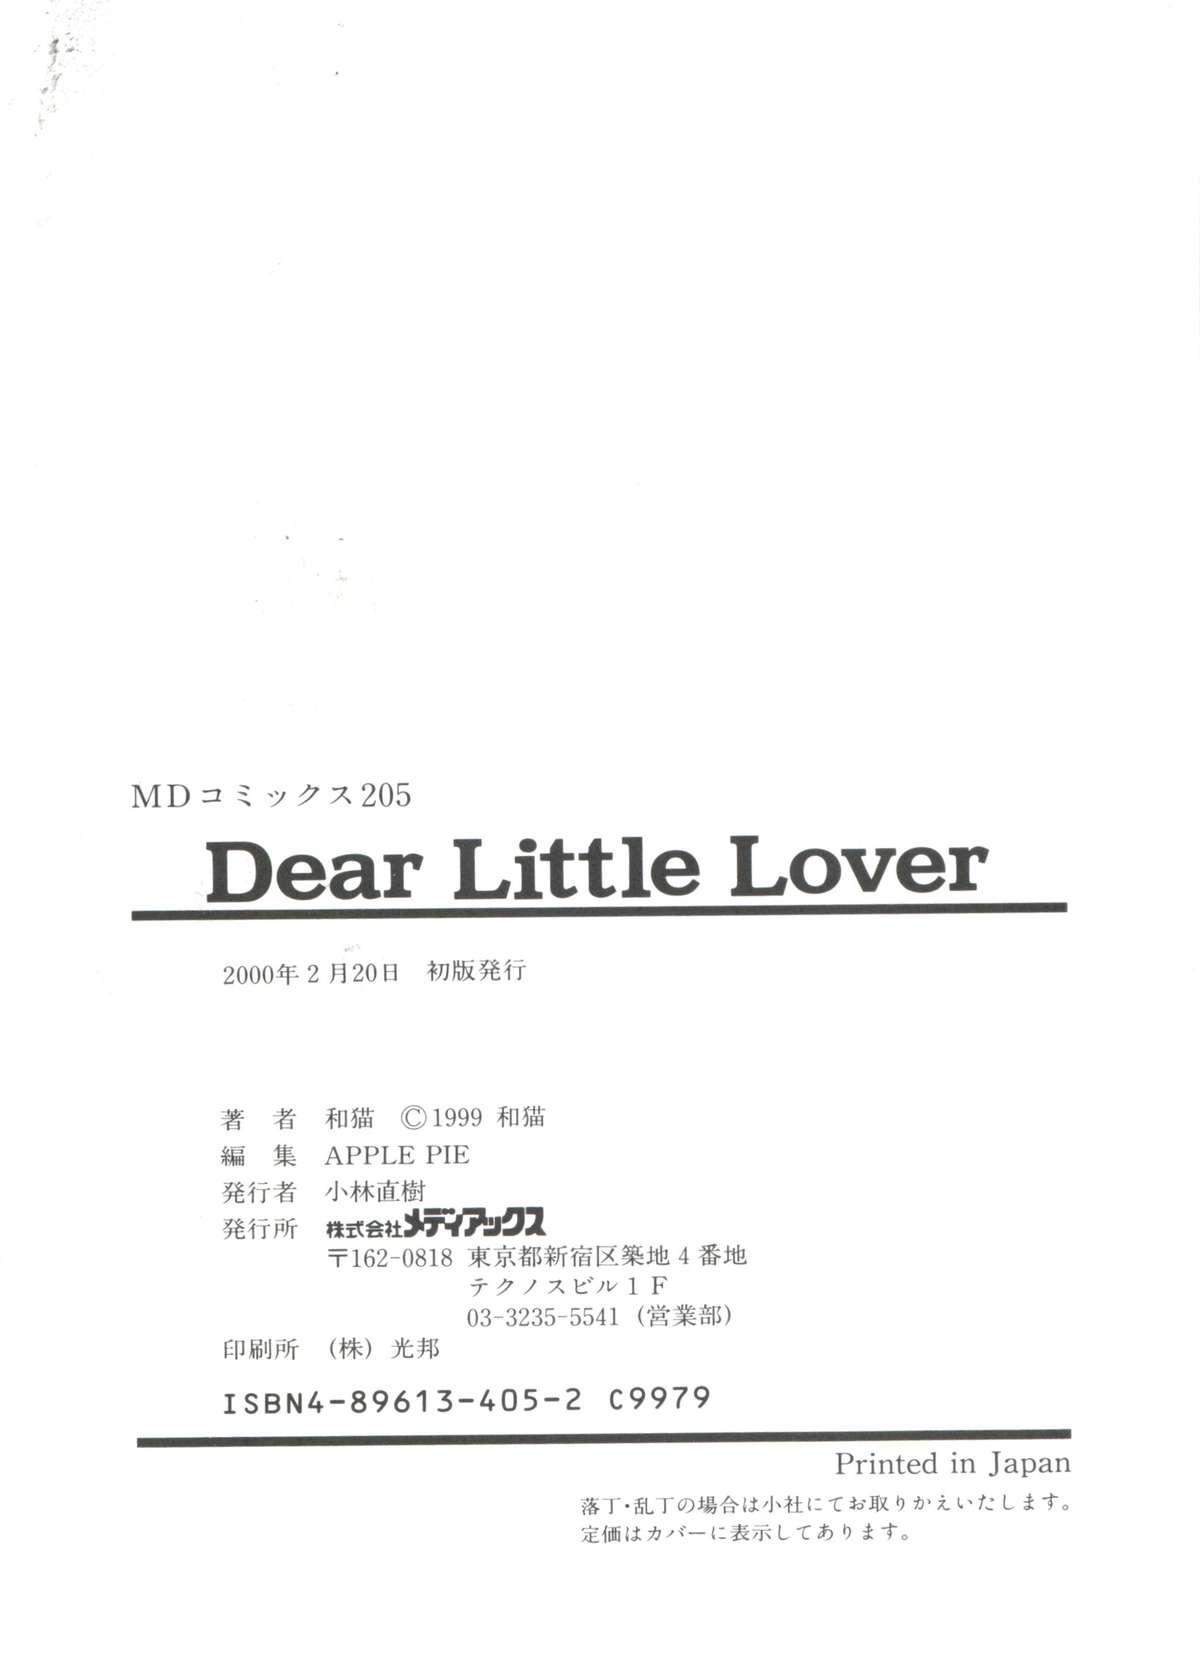 Dear Little Lover 181